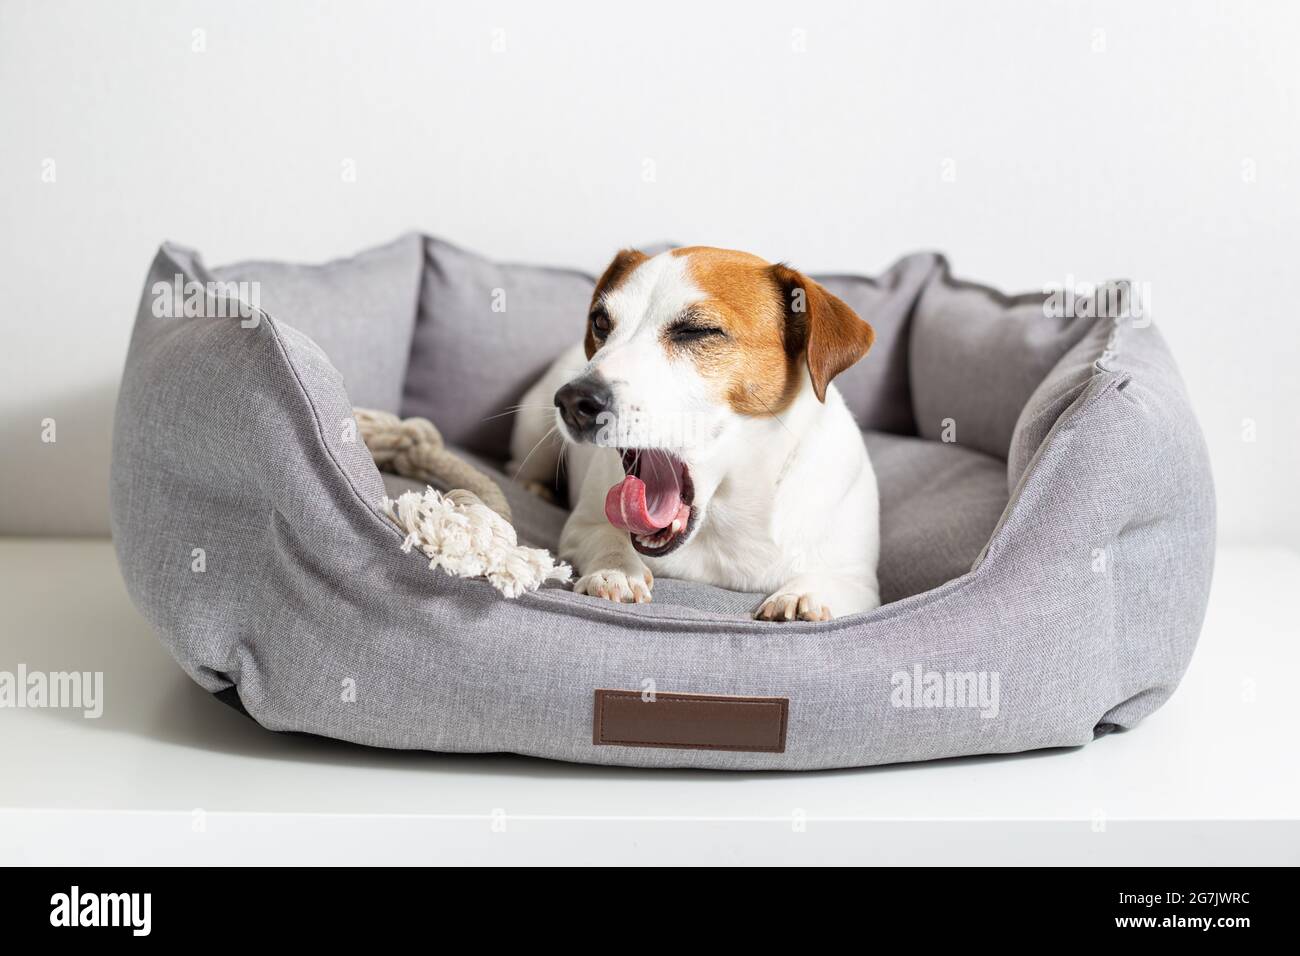 Un chien béant, Jack russell terrier allongé dans un lit d'animal de compagnie gris sur un fond clair. Produits écologiques pour animaux de compagnie, magasin pour animaux de compagnie. Amour et soin pour les animaux de compagnie Banque D'Images